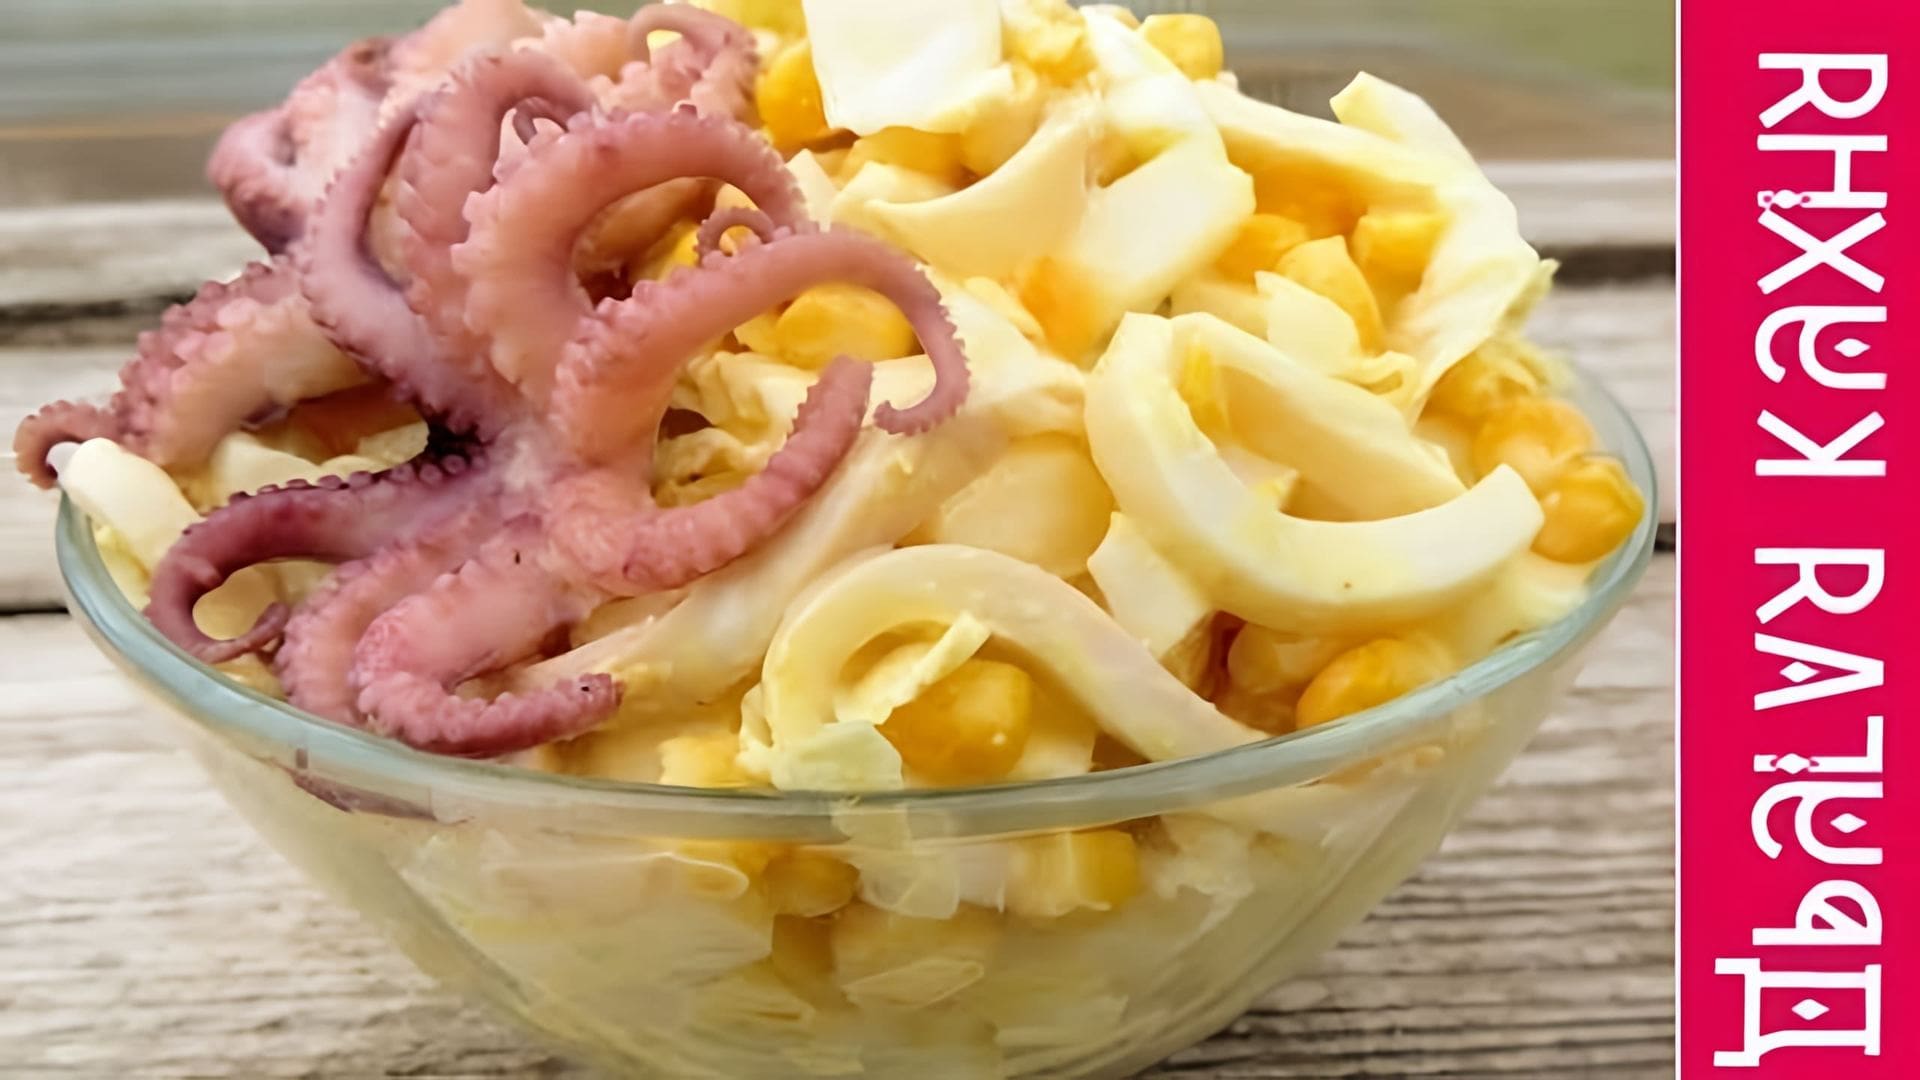 В этом видео демонстрируется рецепт приготовления салата с кальмарами и пекинской капустой